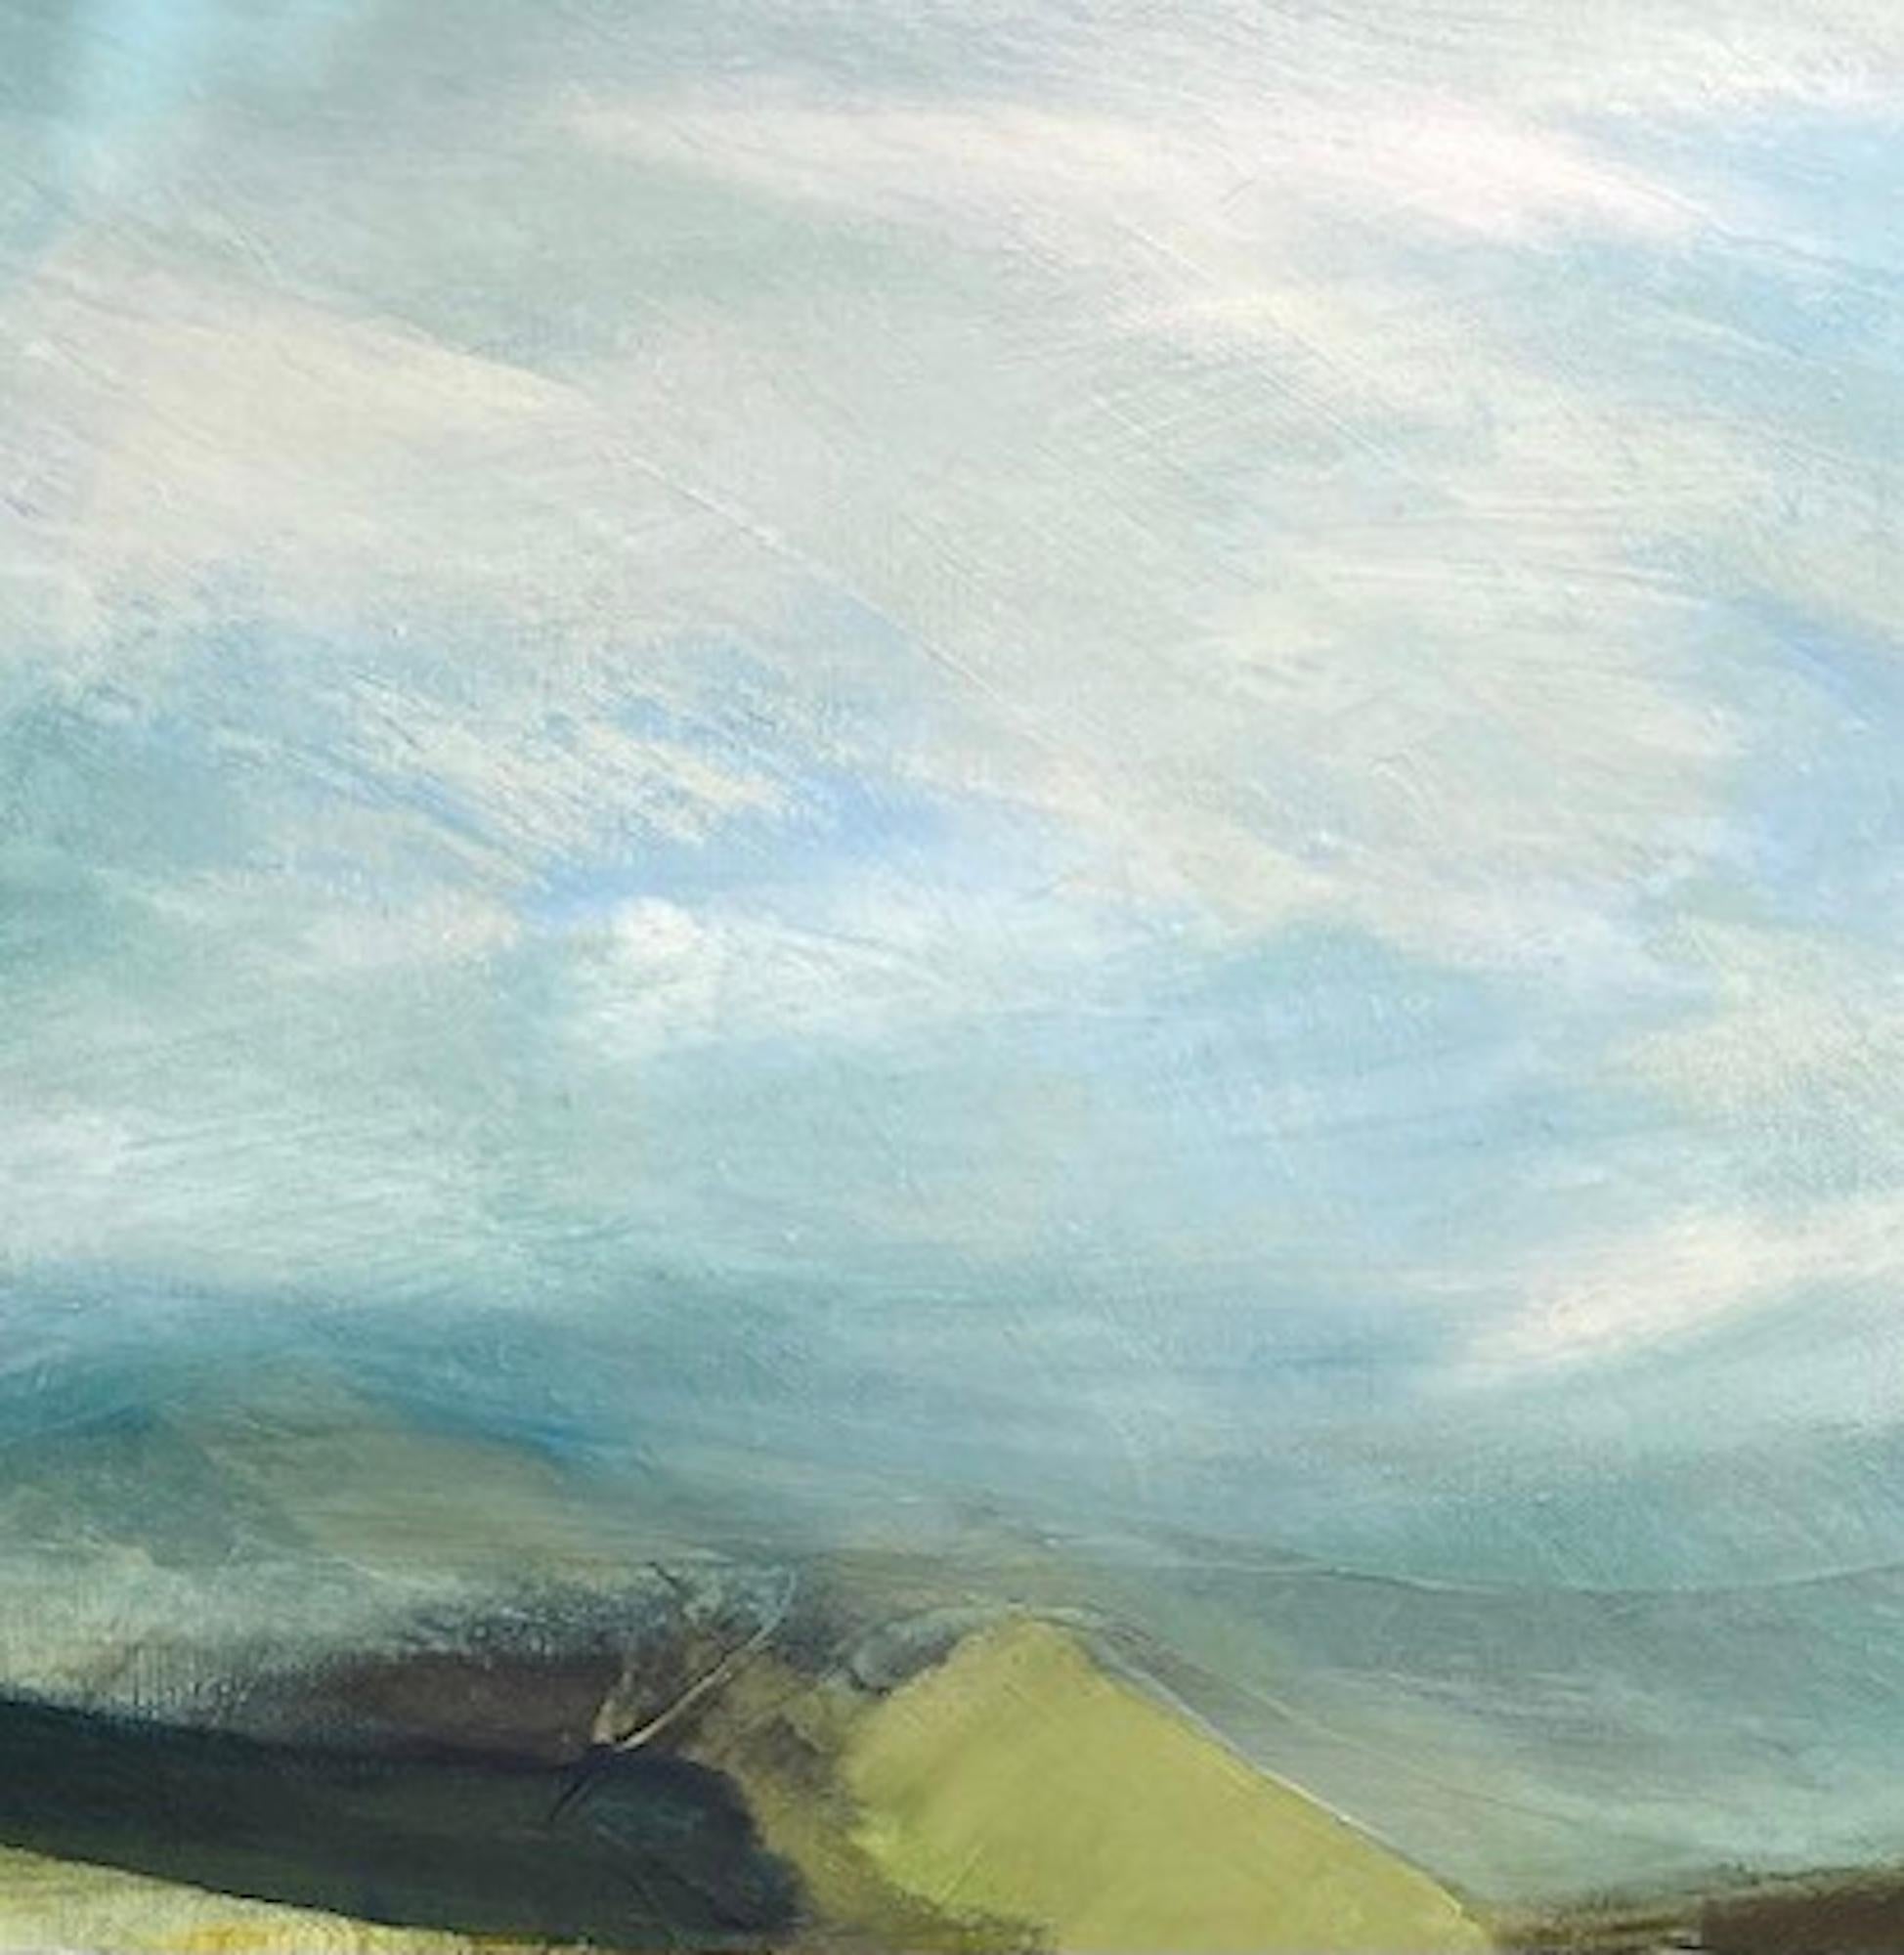 Icefall ist ein Gemälde, das von den Cuillins of Skye und den Schneeflecken inspiriert wurde, die noch lange nach dem Winter übrig sind. Die Helligkeit und die spiegelnde Qualität verleihen dem Bild einen Hauch von Weltlichkeit. Das Gemälde ist auf